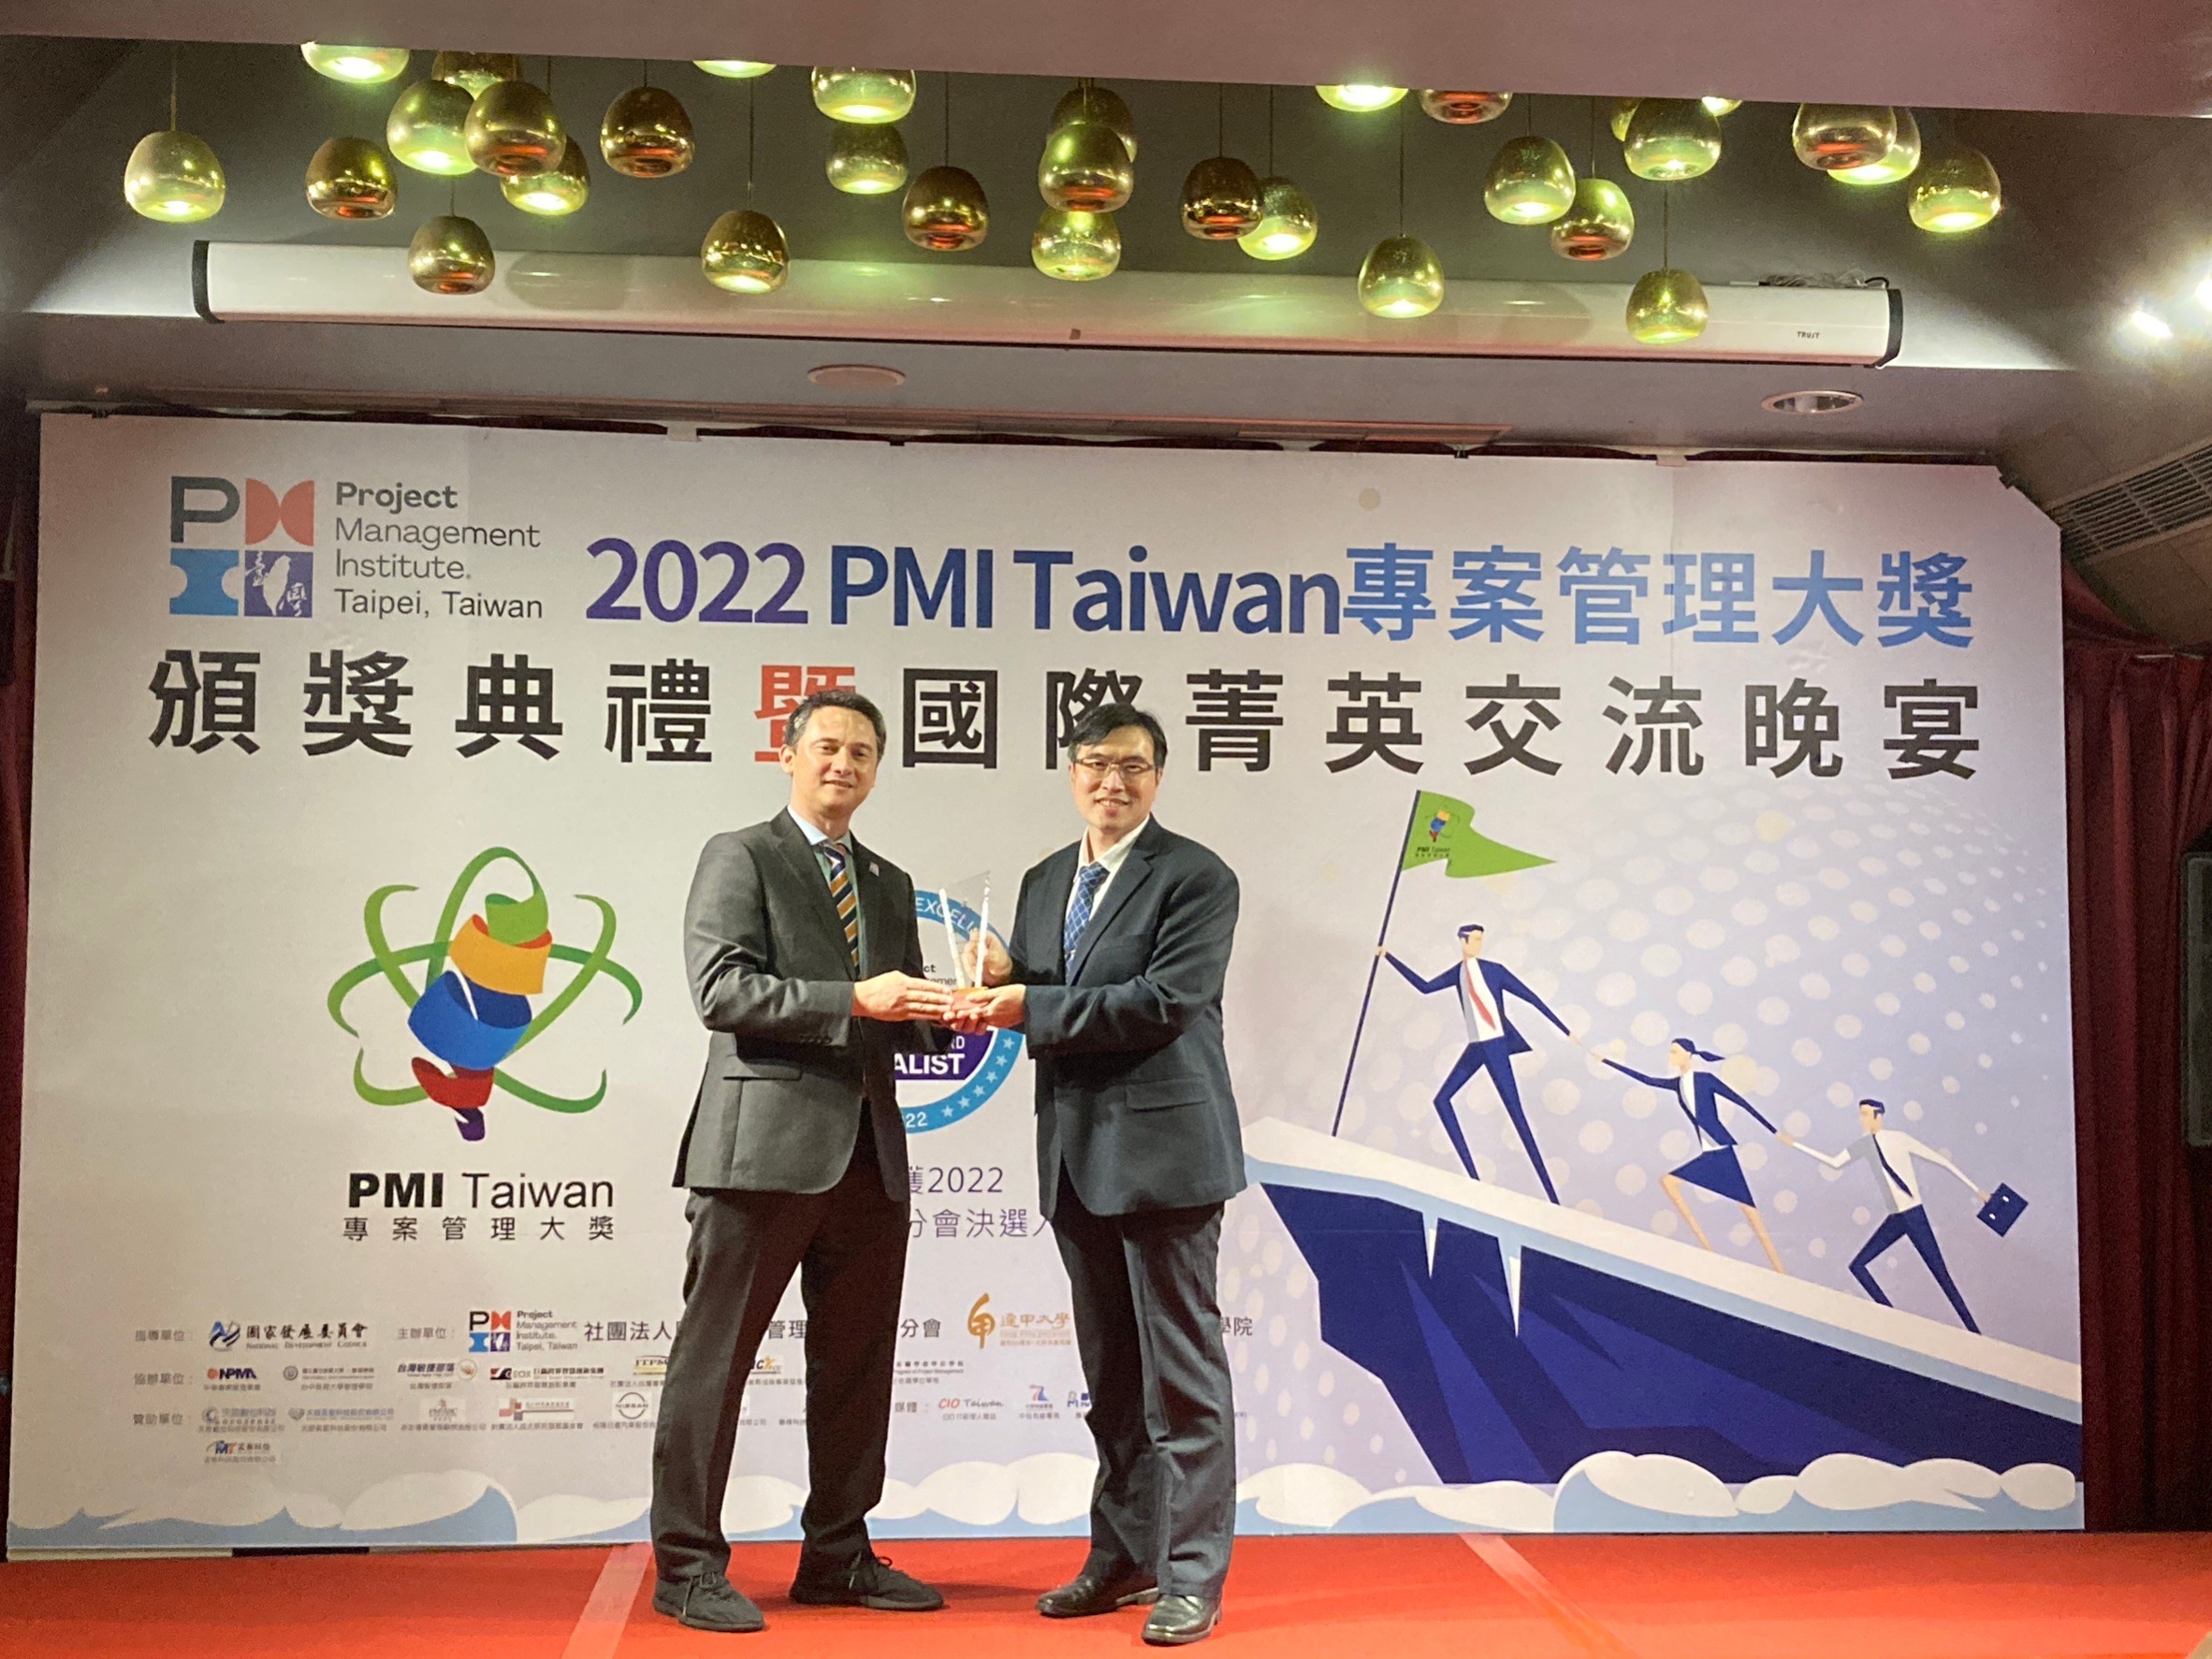 昨(22)日由建設局副局長顏煥義代表出席參加專案管理大獎(PMI Taiwan Grand Award)授獎